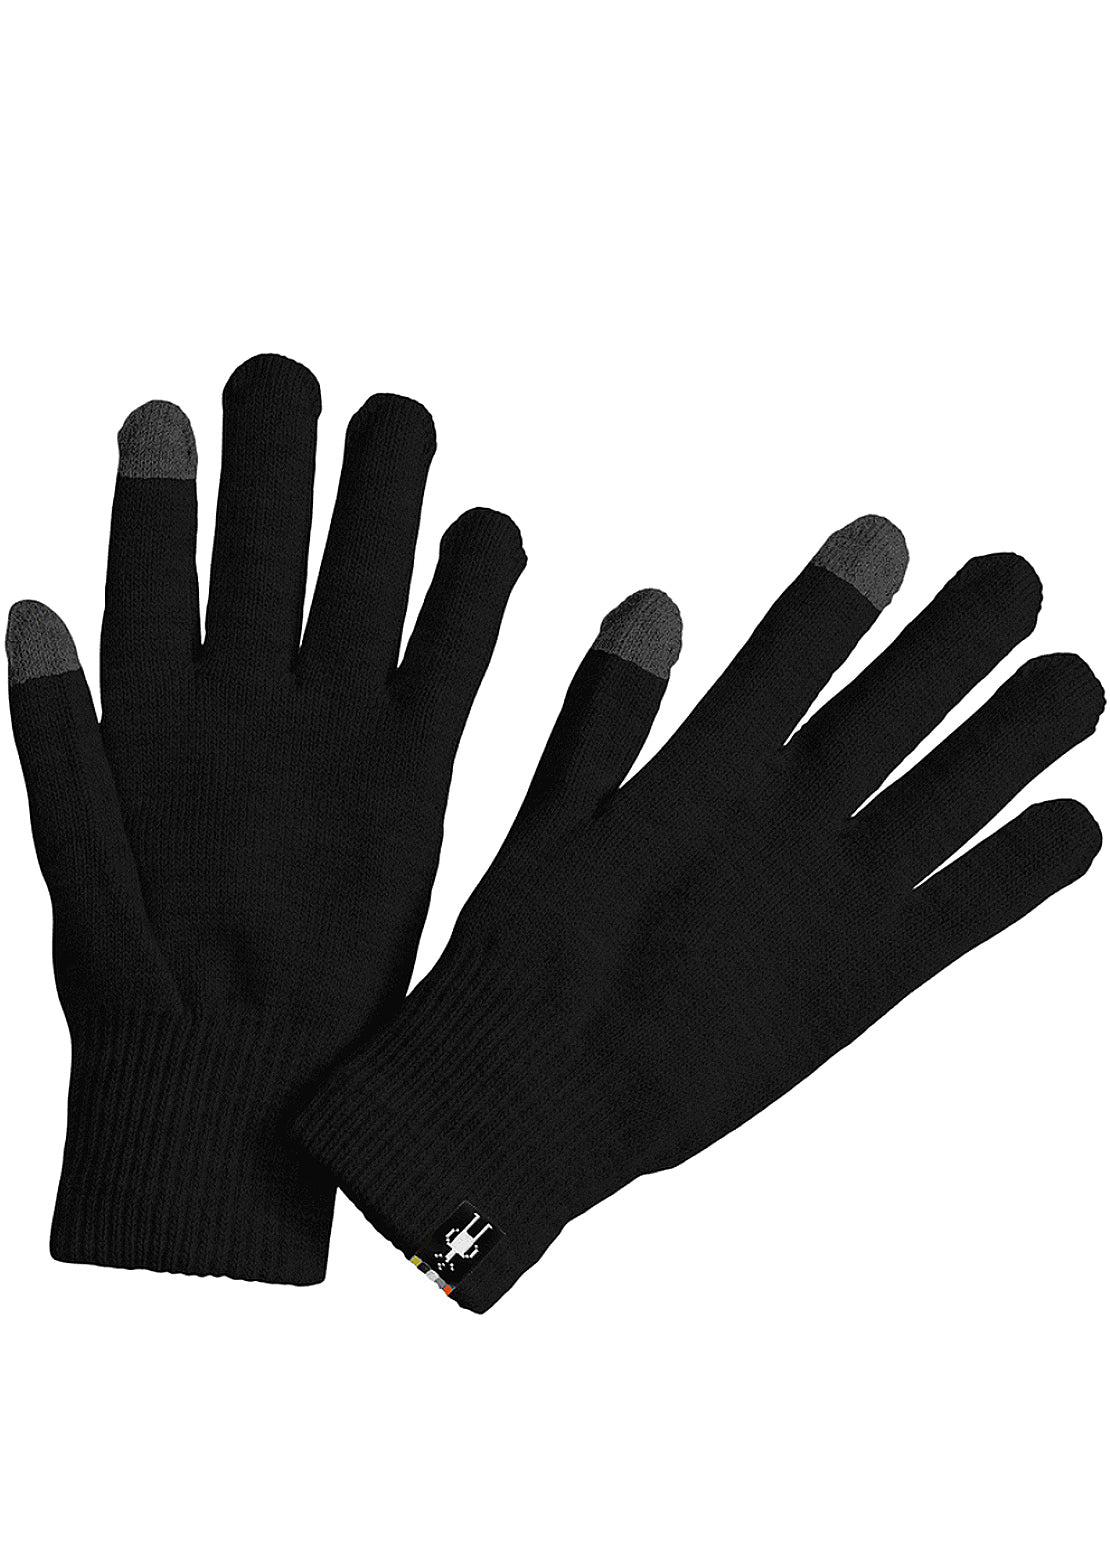 Smartwool Liner Gloves Black